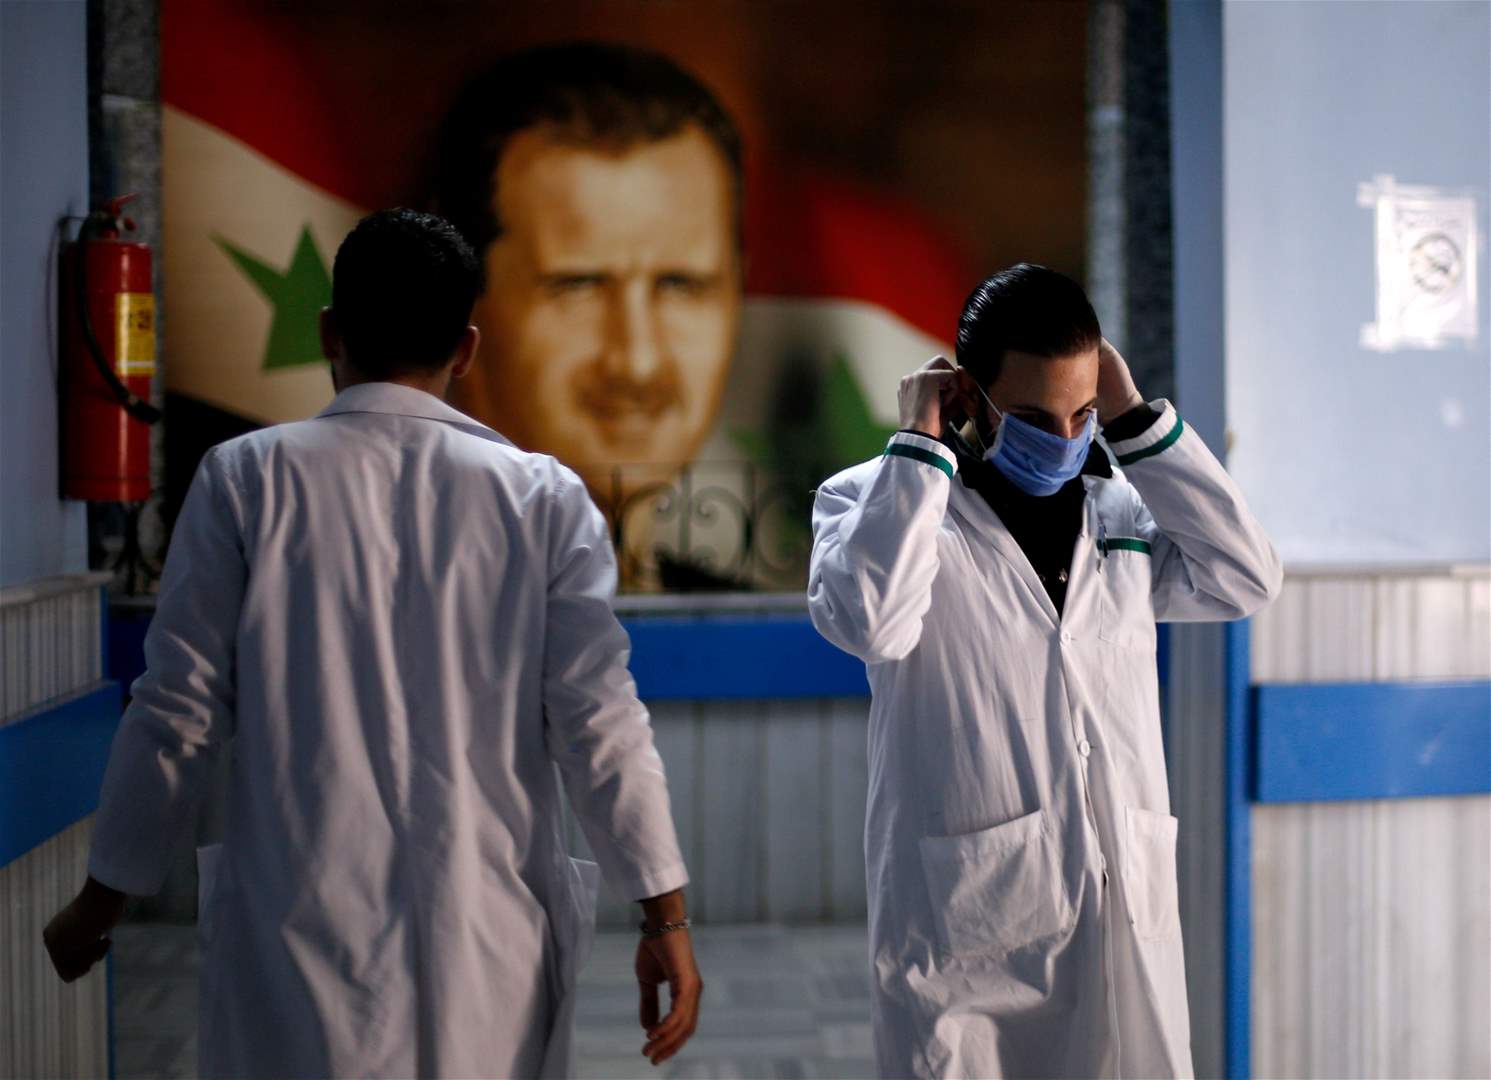 وزارة الصحة السورية: حصيلة الإصابات المسجلة في سوريا بالكورونا حتى اليوم 19 إصابة شفي منها 4 إصابات وتوفيت حالتان